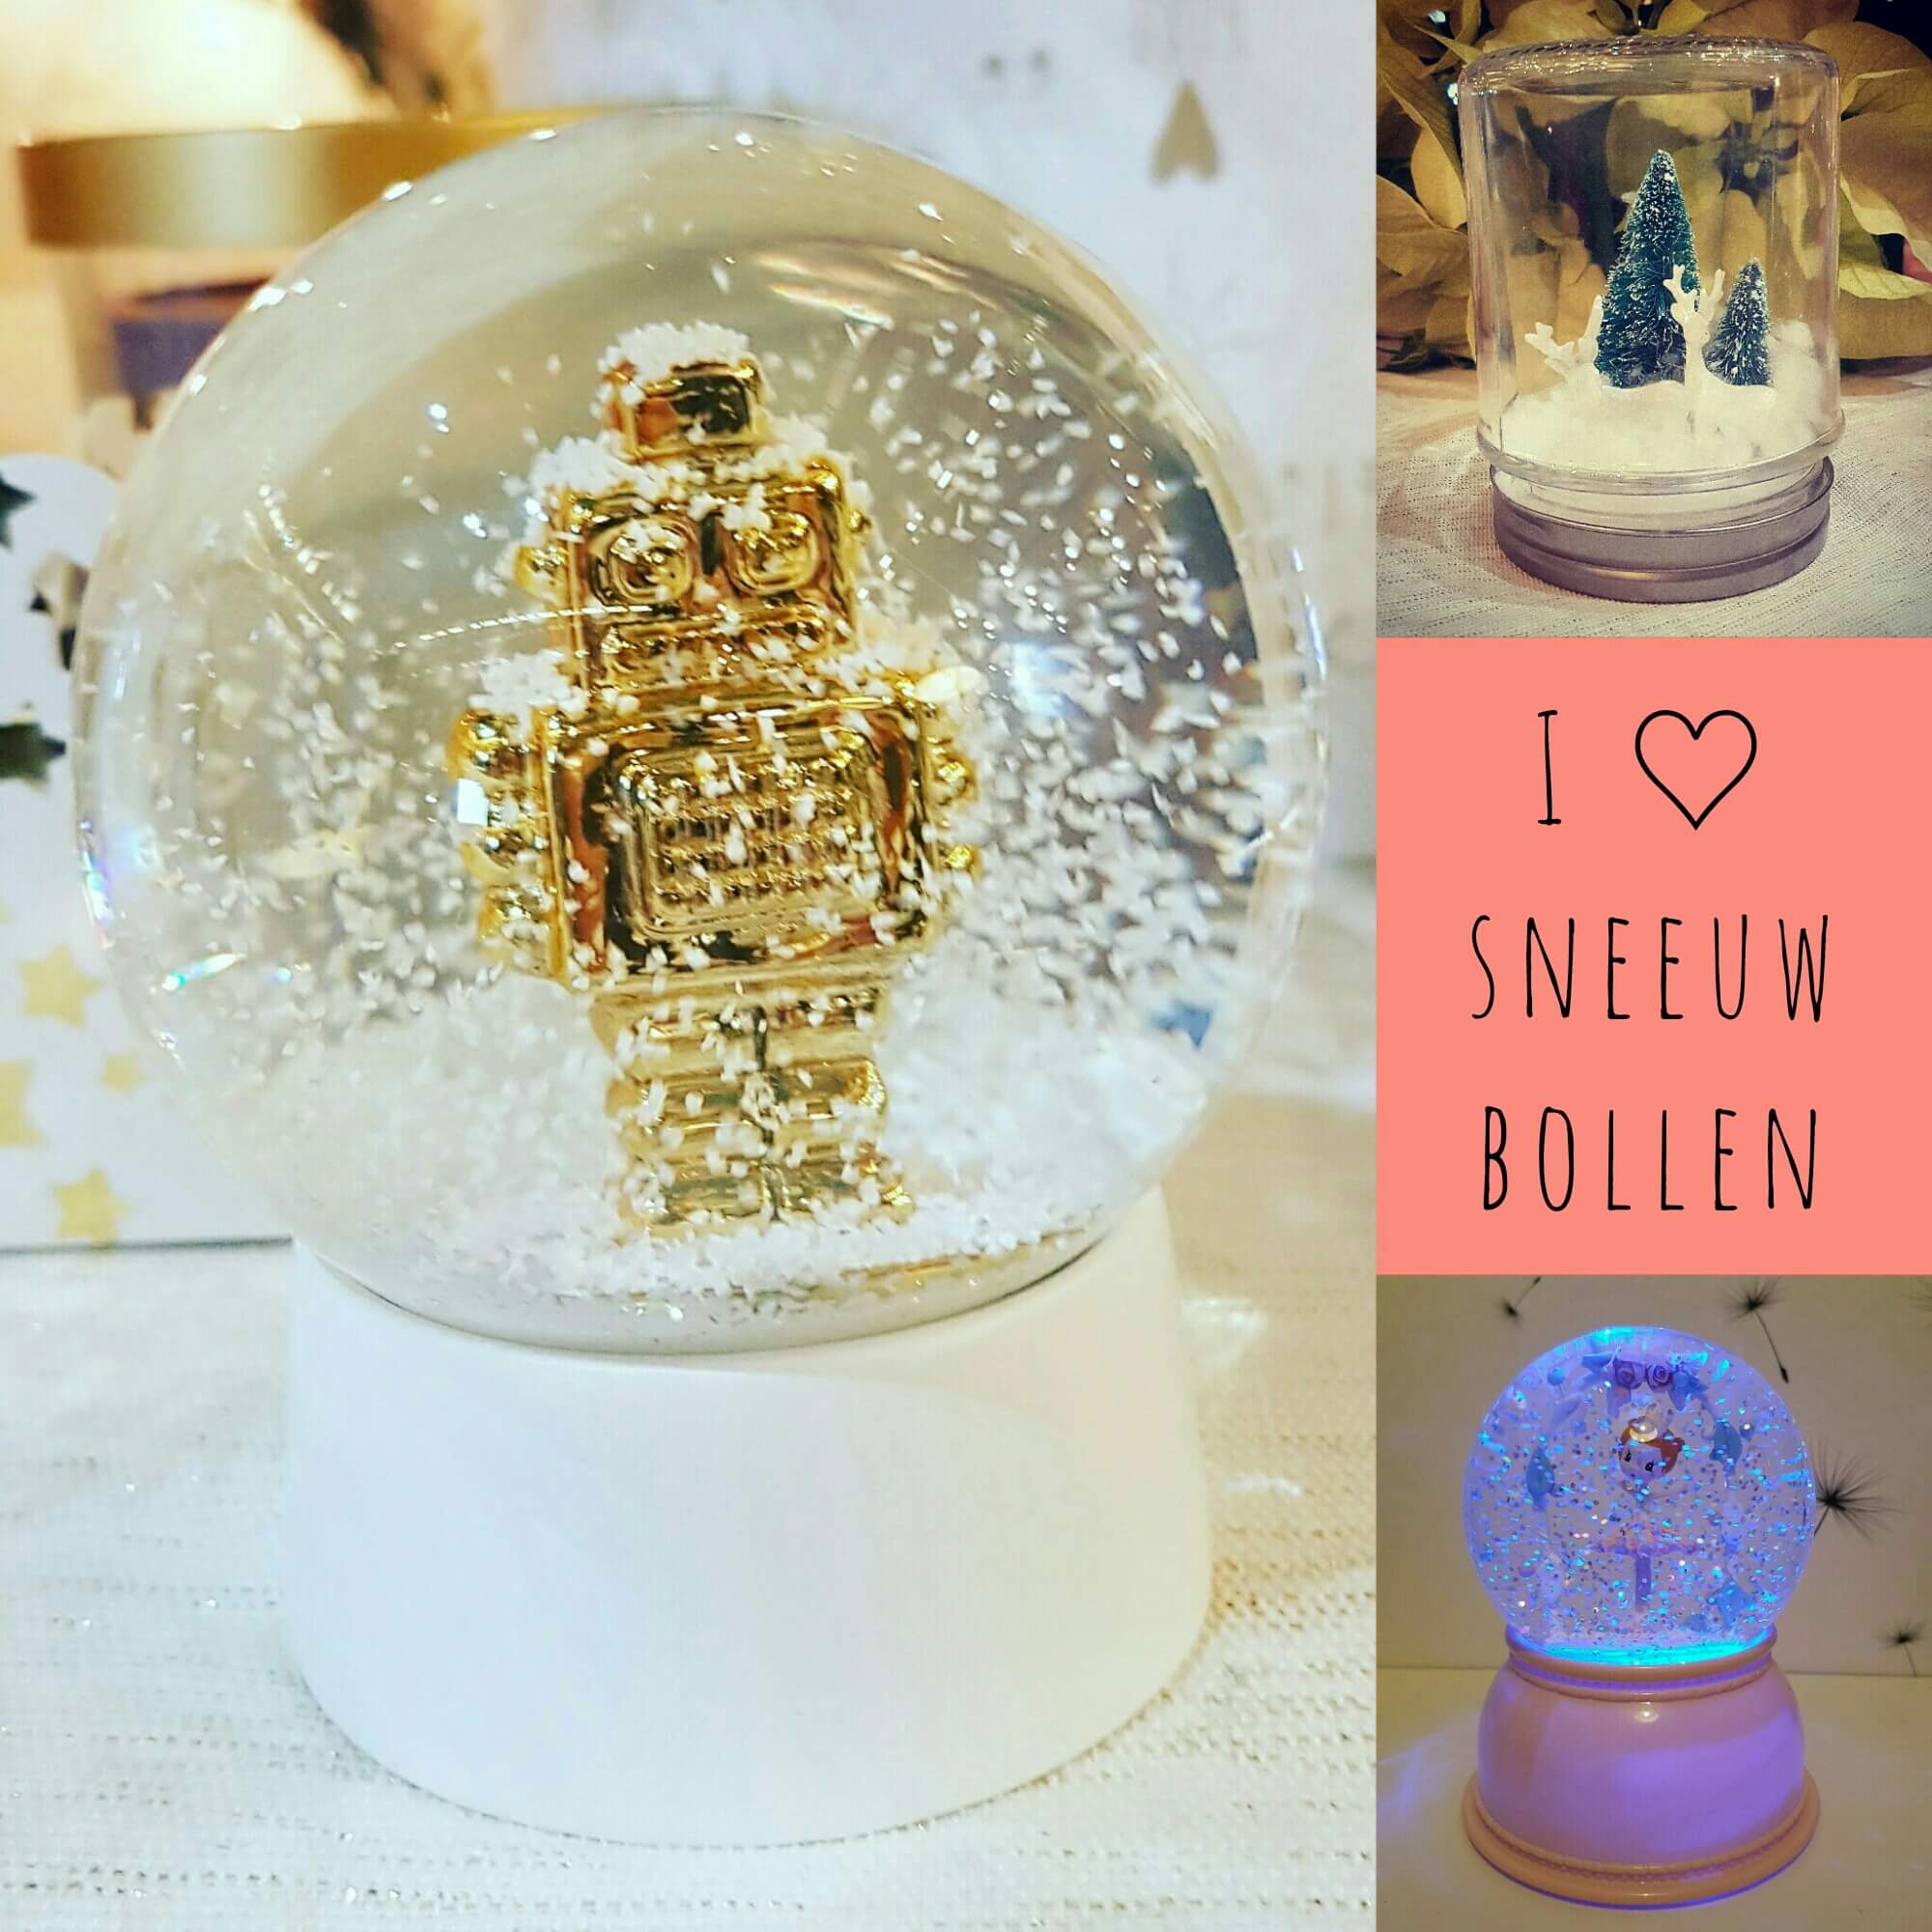 De leukste sneeuwbollen voor kerst, om te maken in de winkels met kids